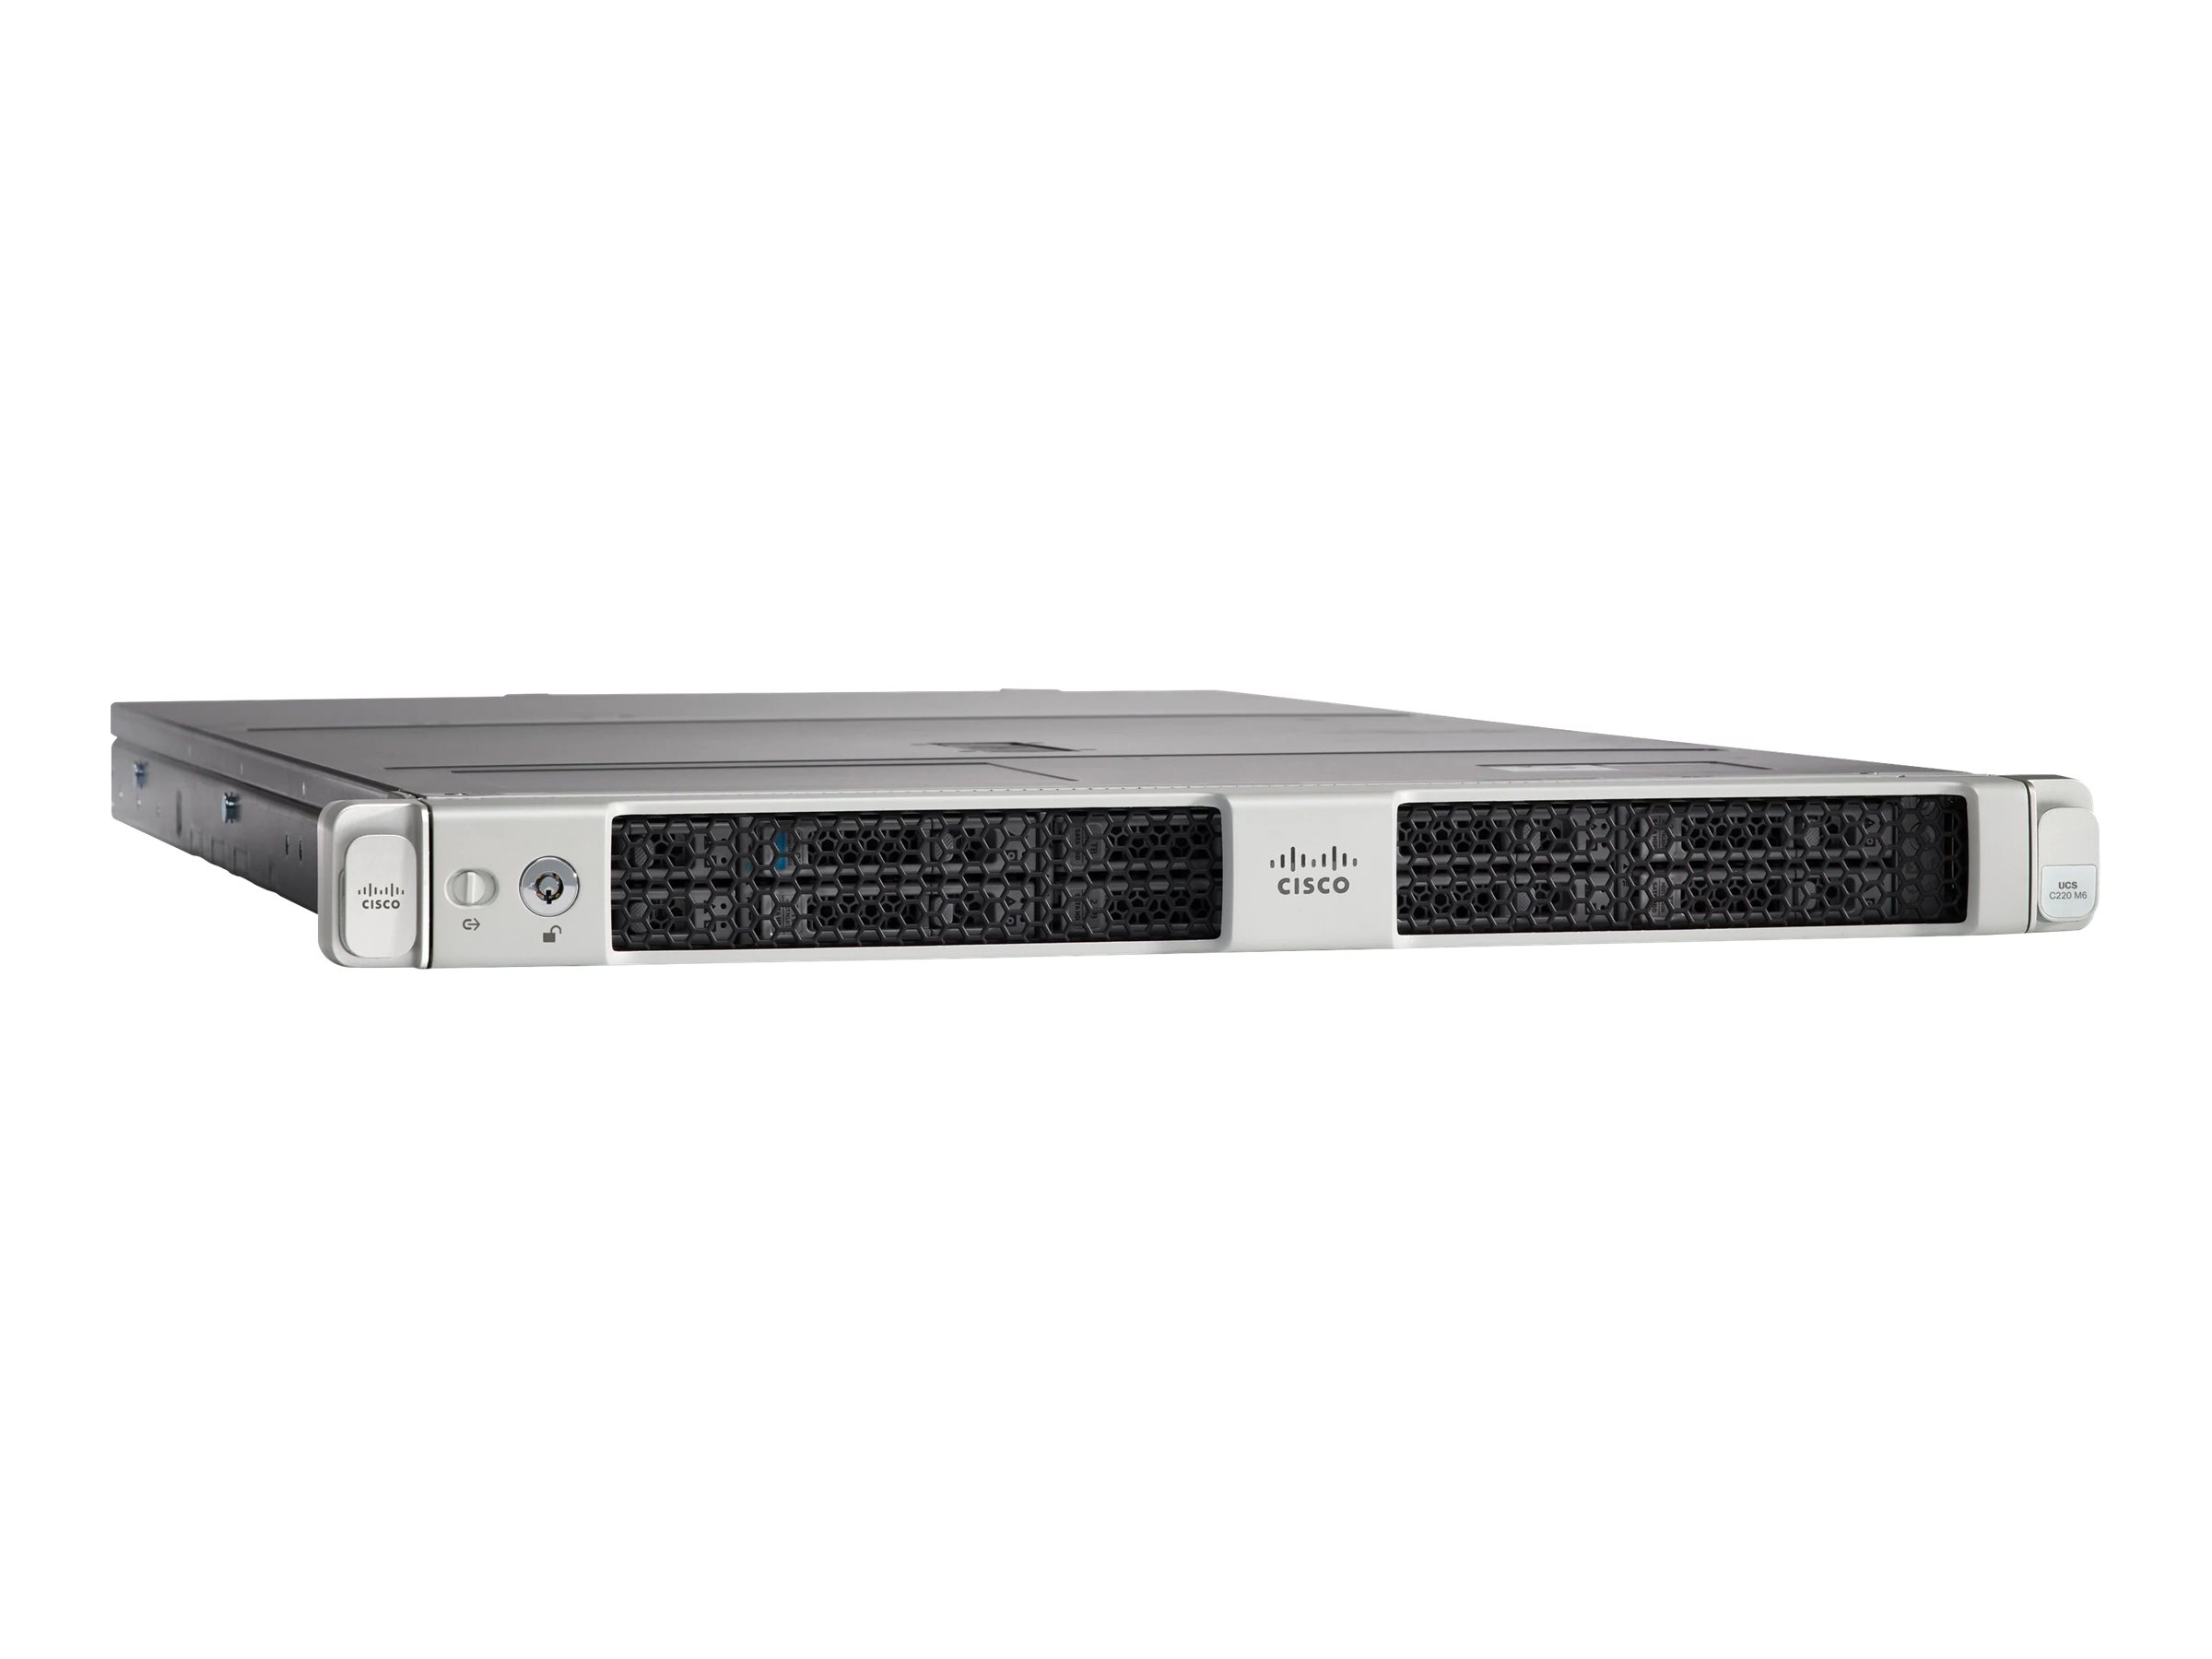 Cisco UCS C220 M6 SFF Rack Server - Serveur - Montable sur rack - 1U - 2 voies - pas de processeur - RAM 0 Go - SATA/SAS/PCI Express - hot-swap 2.5" baie(s) - aucun disque dur - G200e - Gigabit Ethernet - moniteur : aucun - DISTI - UCSC-C220-M6S-CH - Serveurs rack